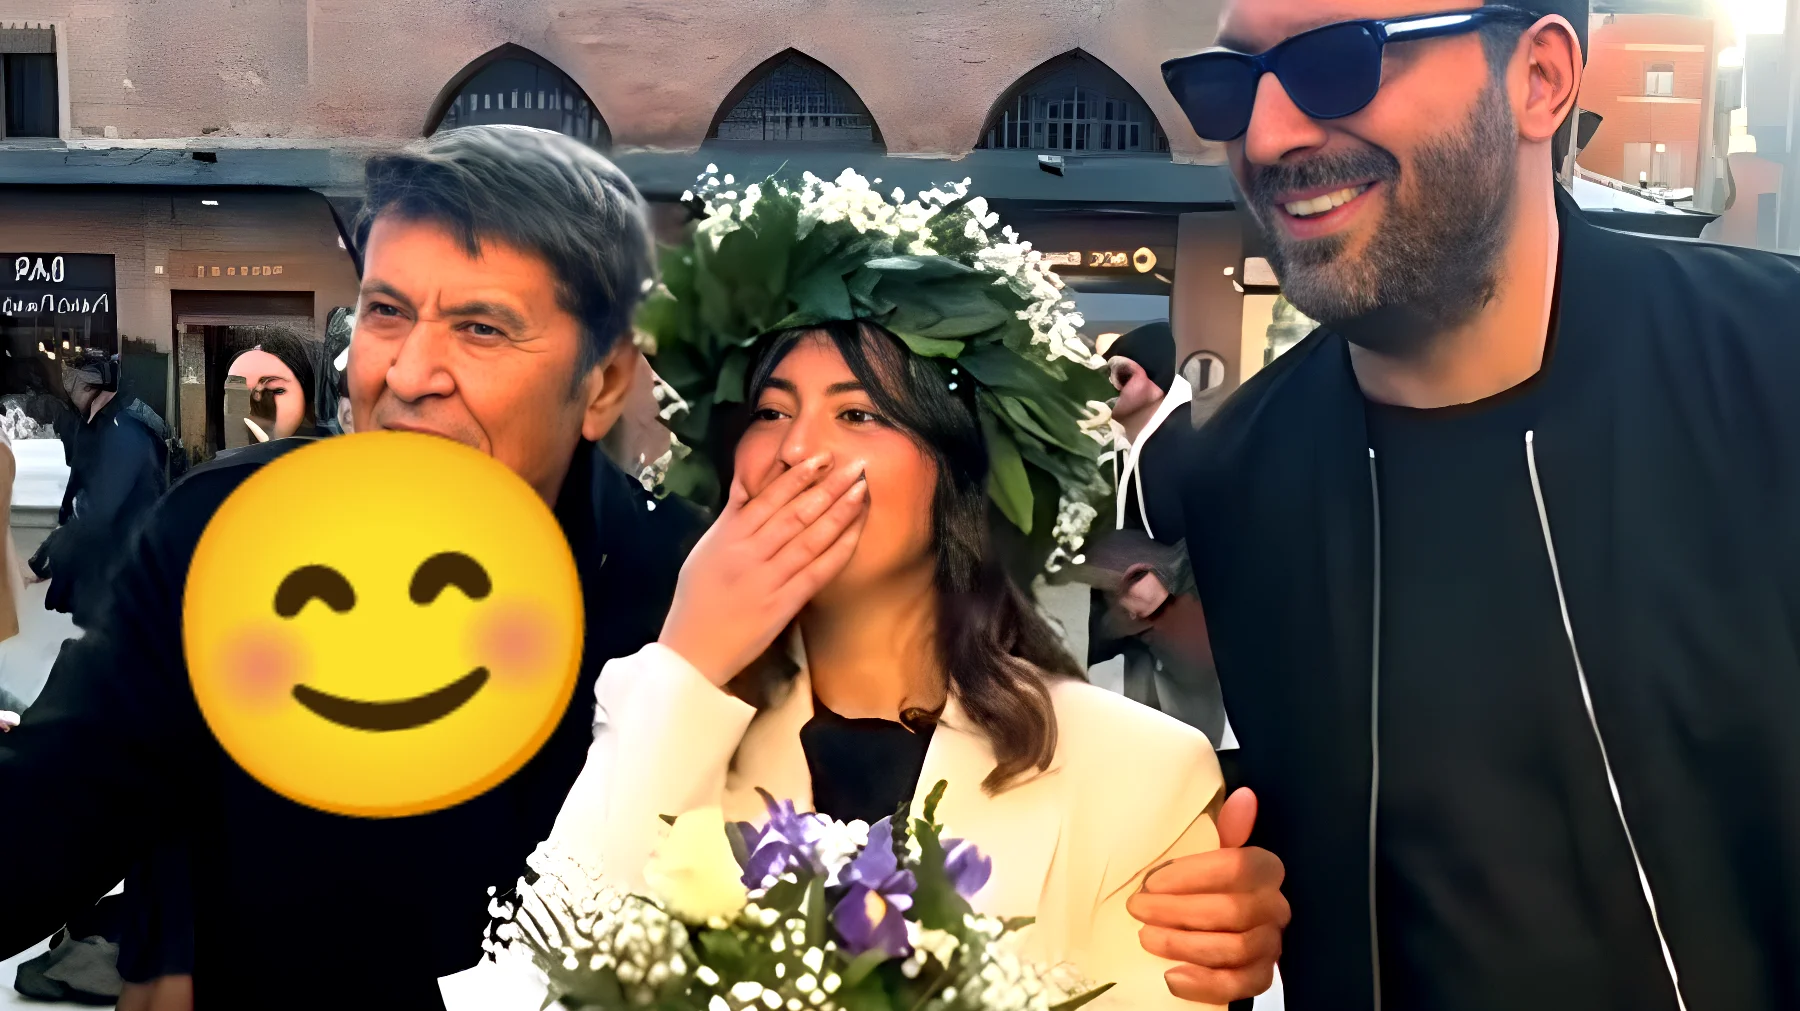 Cremonini e Morandi fanno impazzire Bologna: intercettano una neolaureata, il video diventa virale